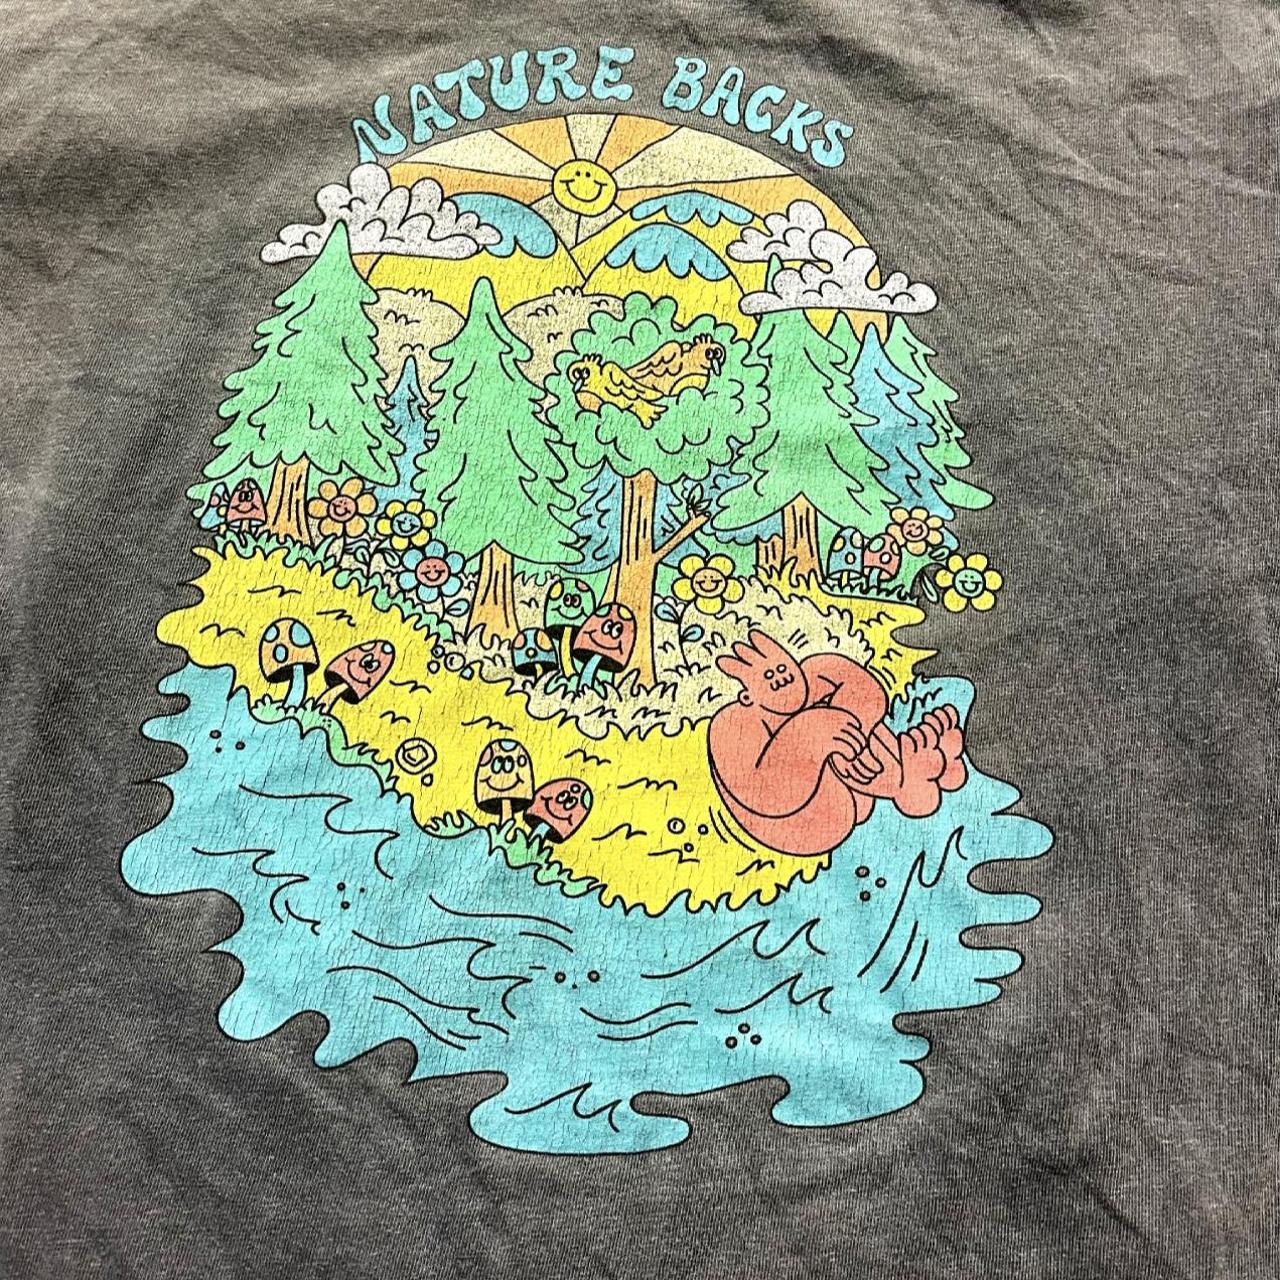 Product Image 3 - Retro Nature Backs T-Shirt, Men’s